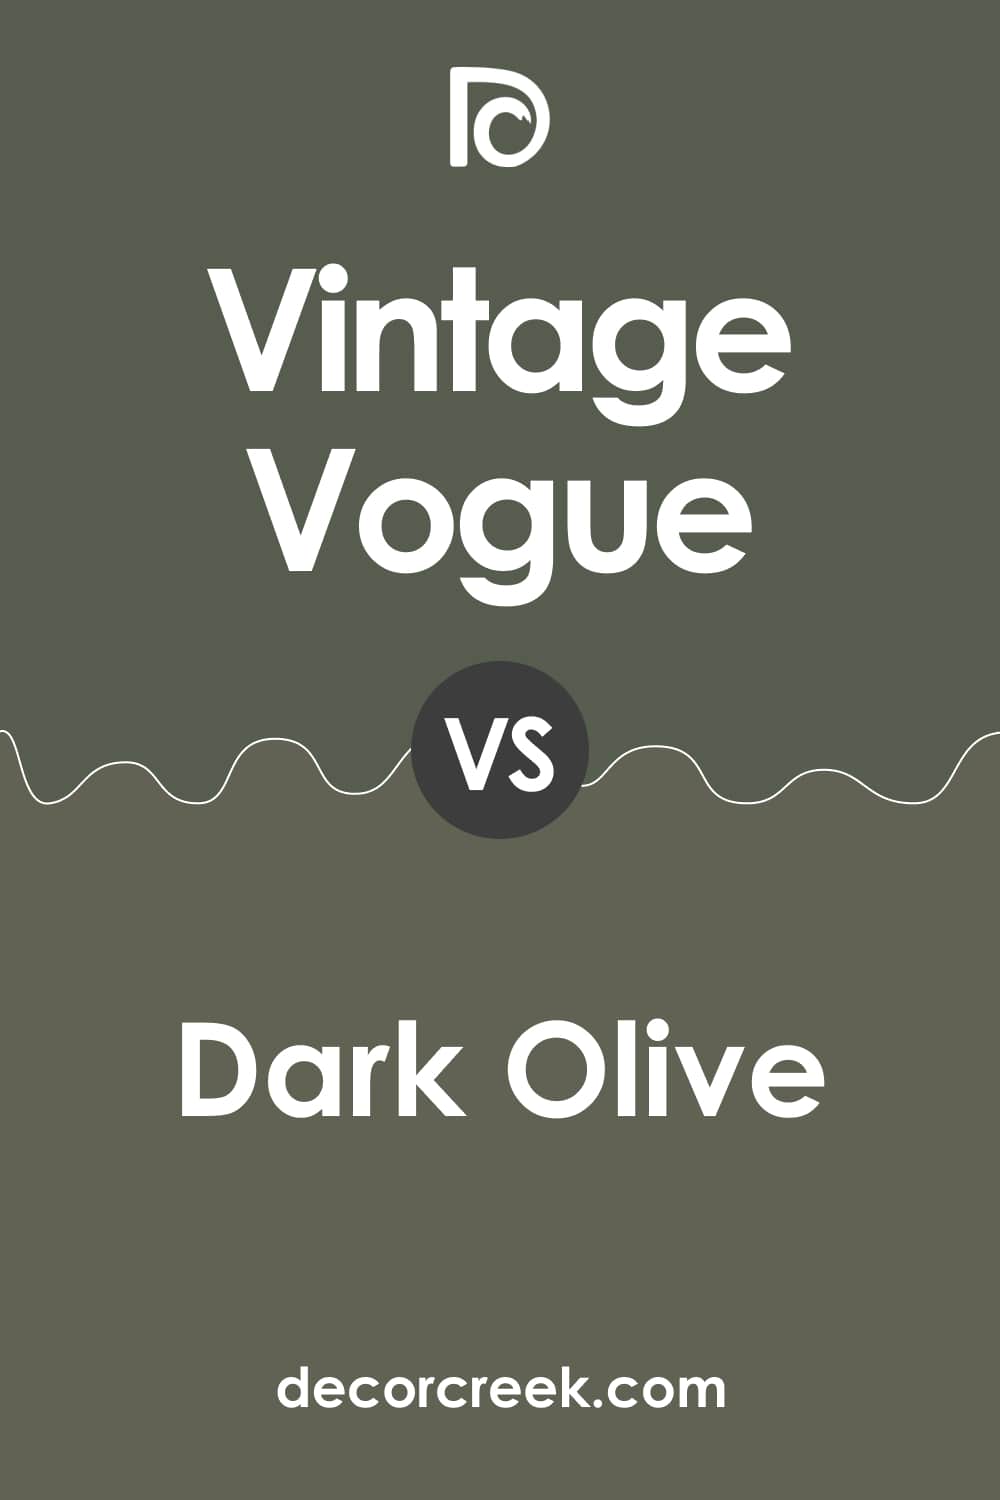 Vintage Vogue vs Dark Olive